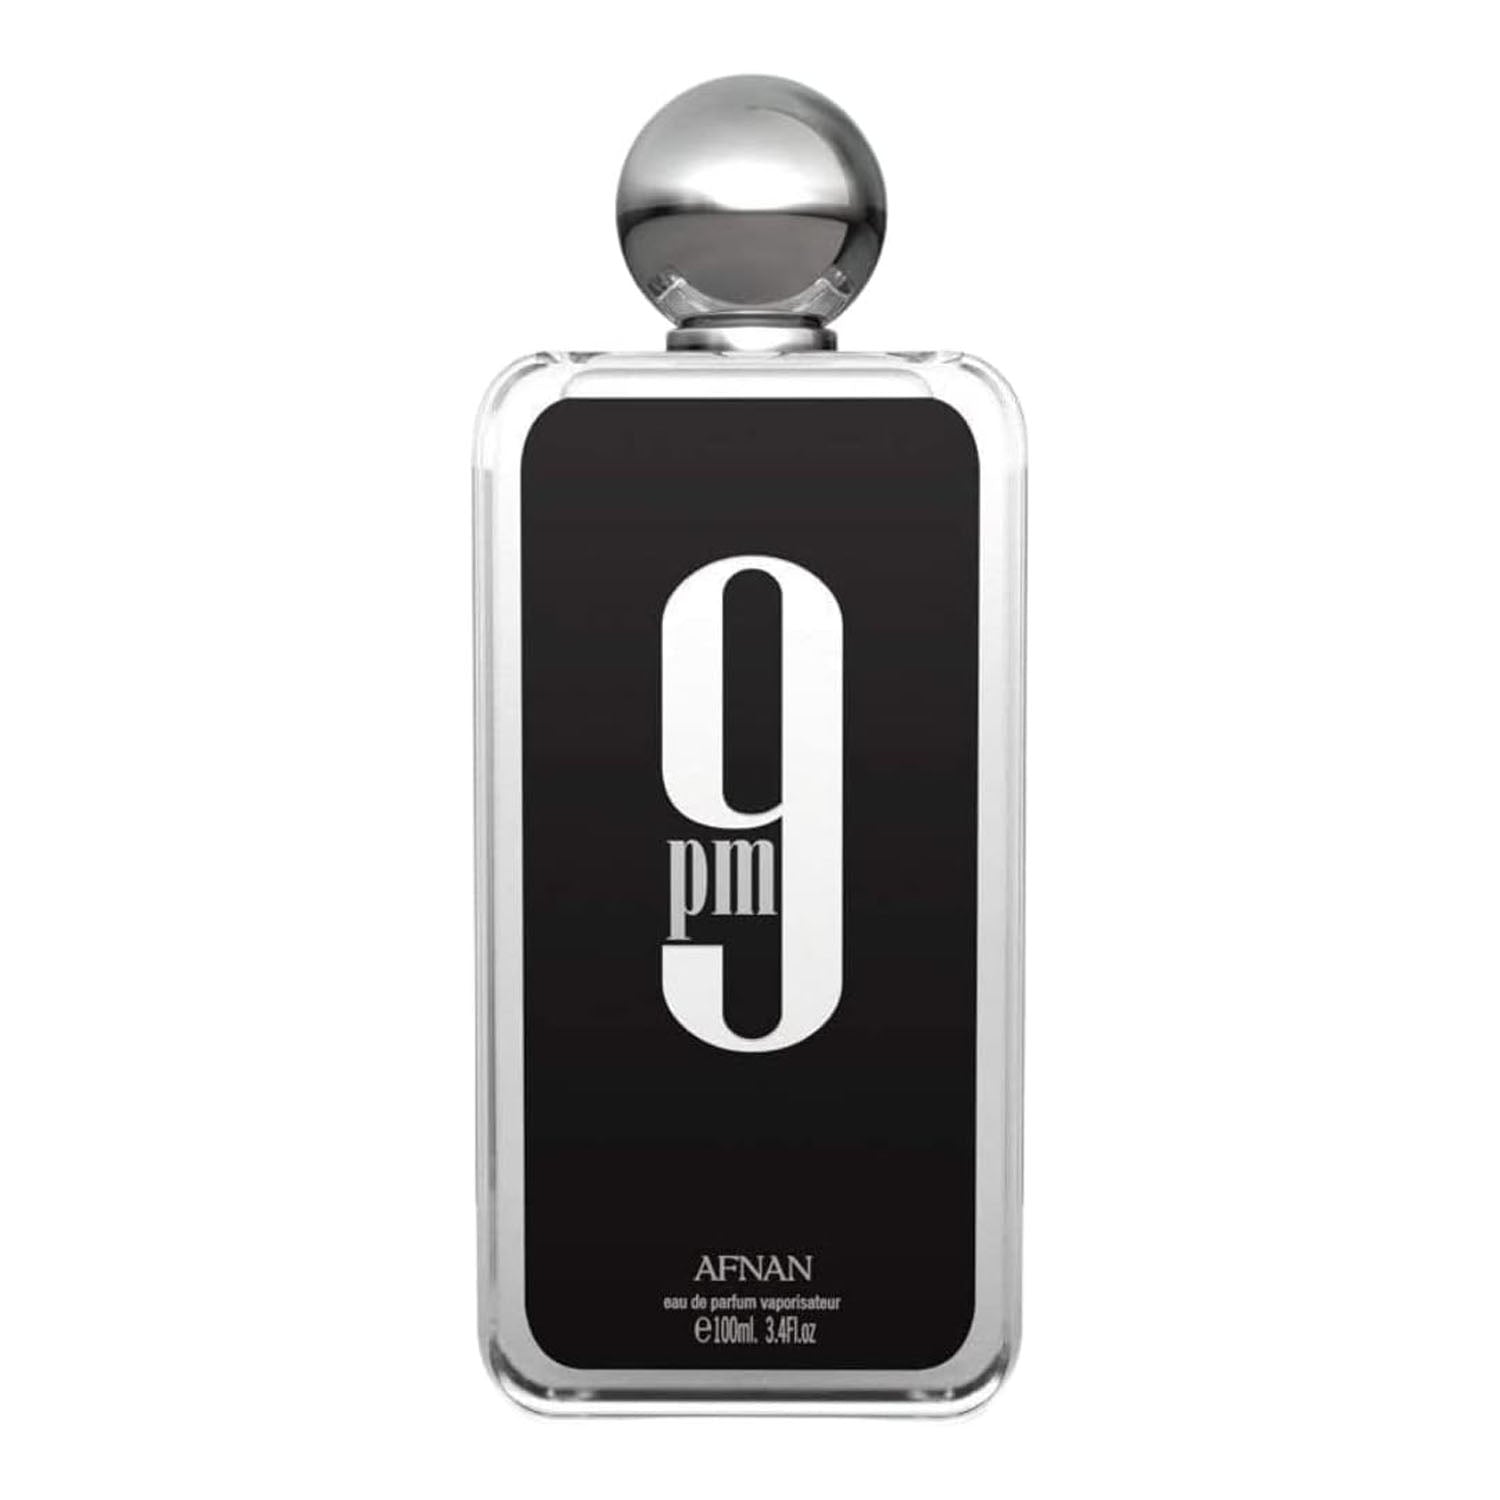 Afnan 9 PM Eau de Parfum Spray 100 ml for Men (Black Box)